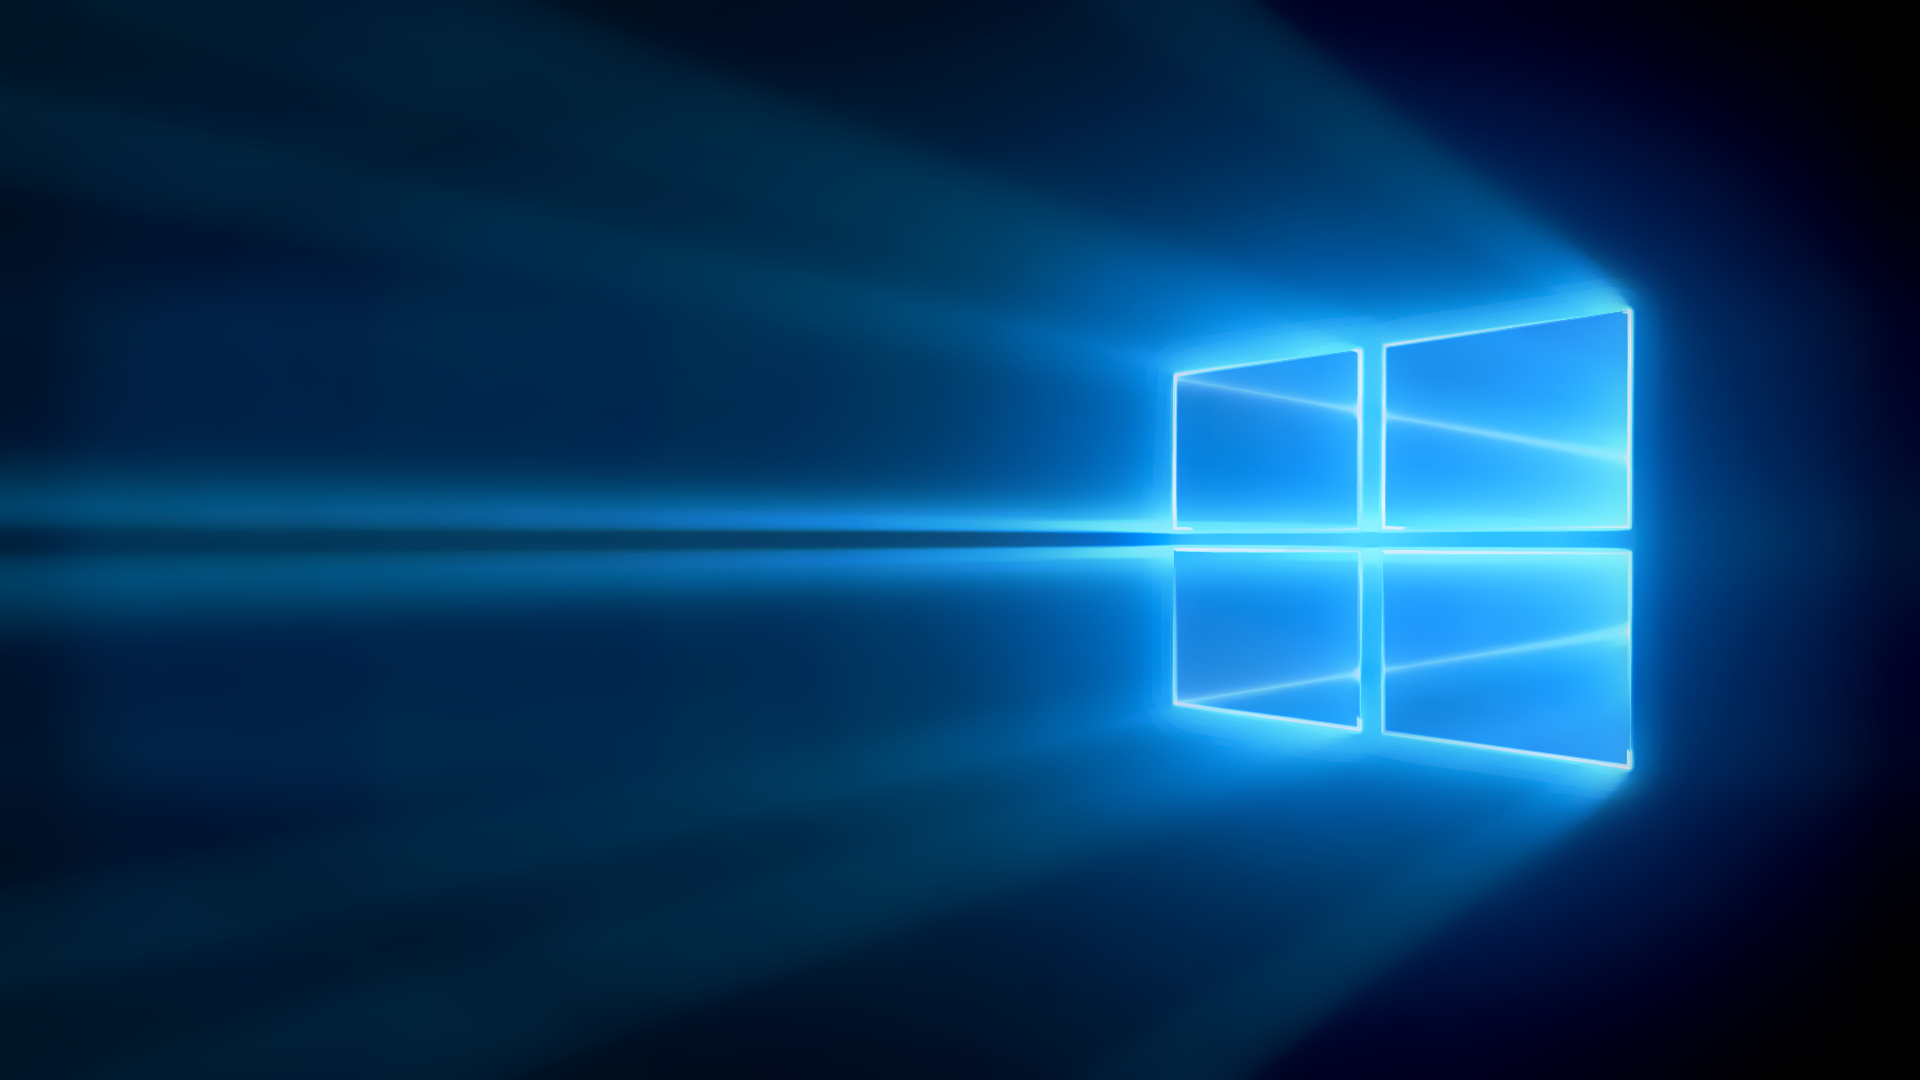 كيف تغير حجم الخط في Windows 10 من أجل تجربة بصرية مريحة؟ - Arabhardware